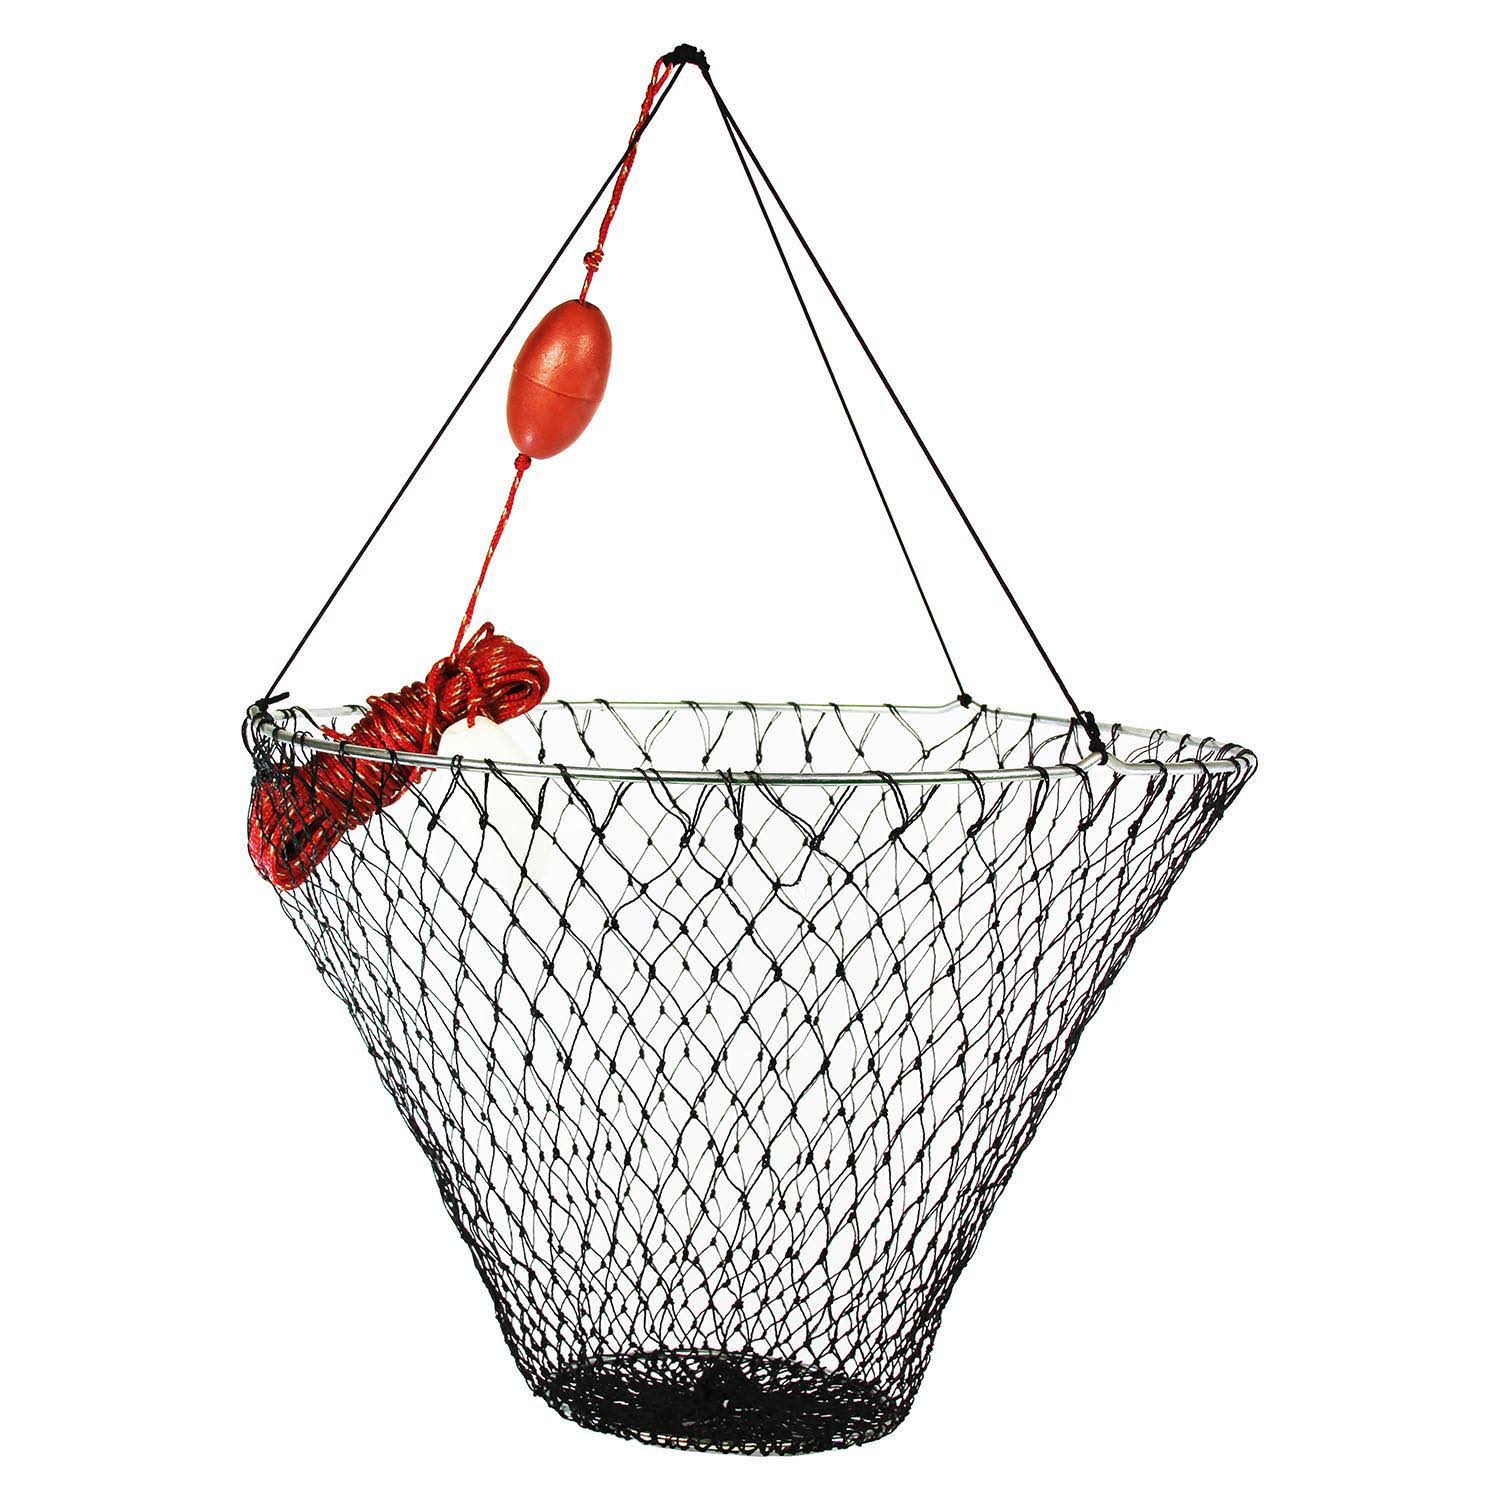 Promar Deluxe Hoop Nets - 32in